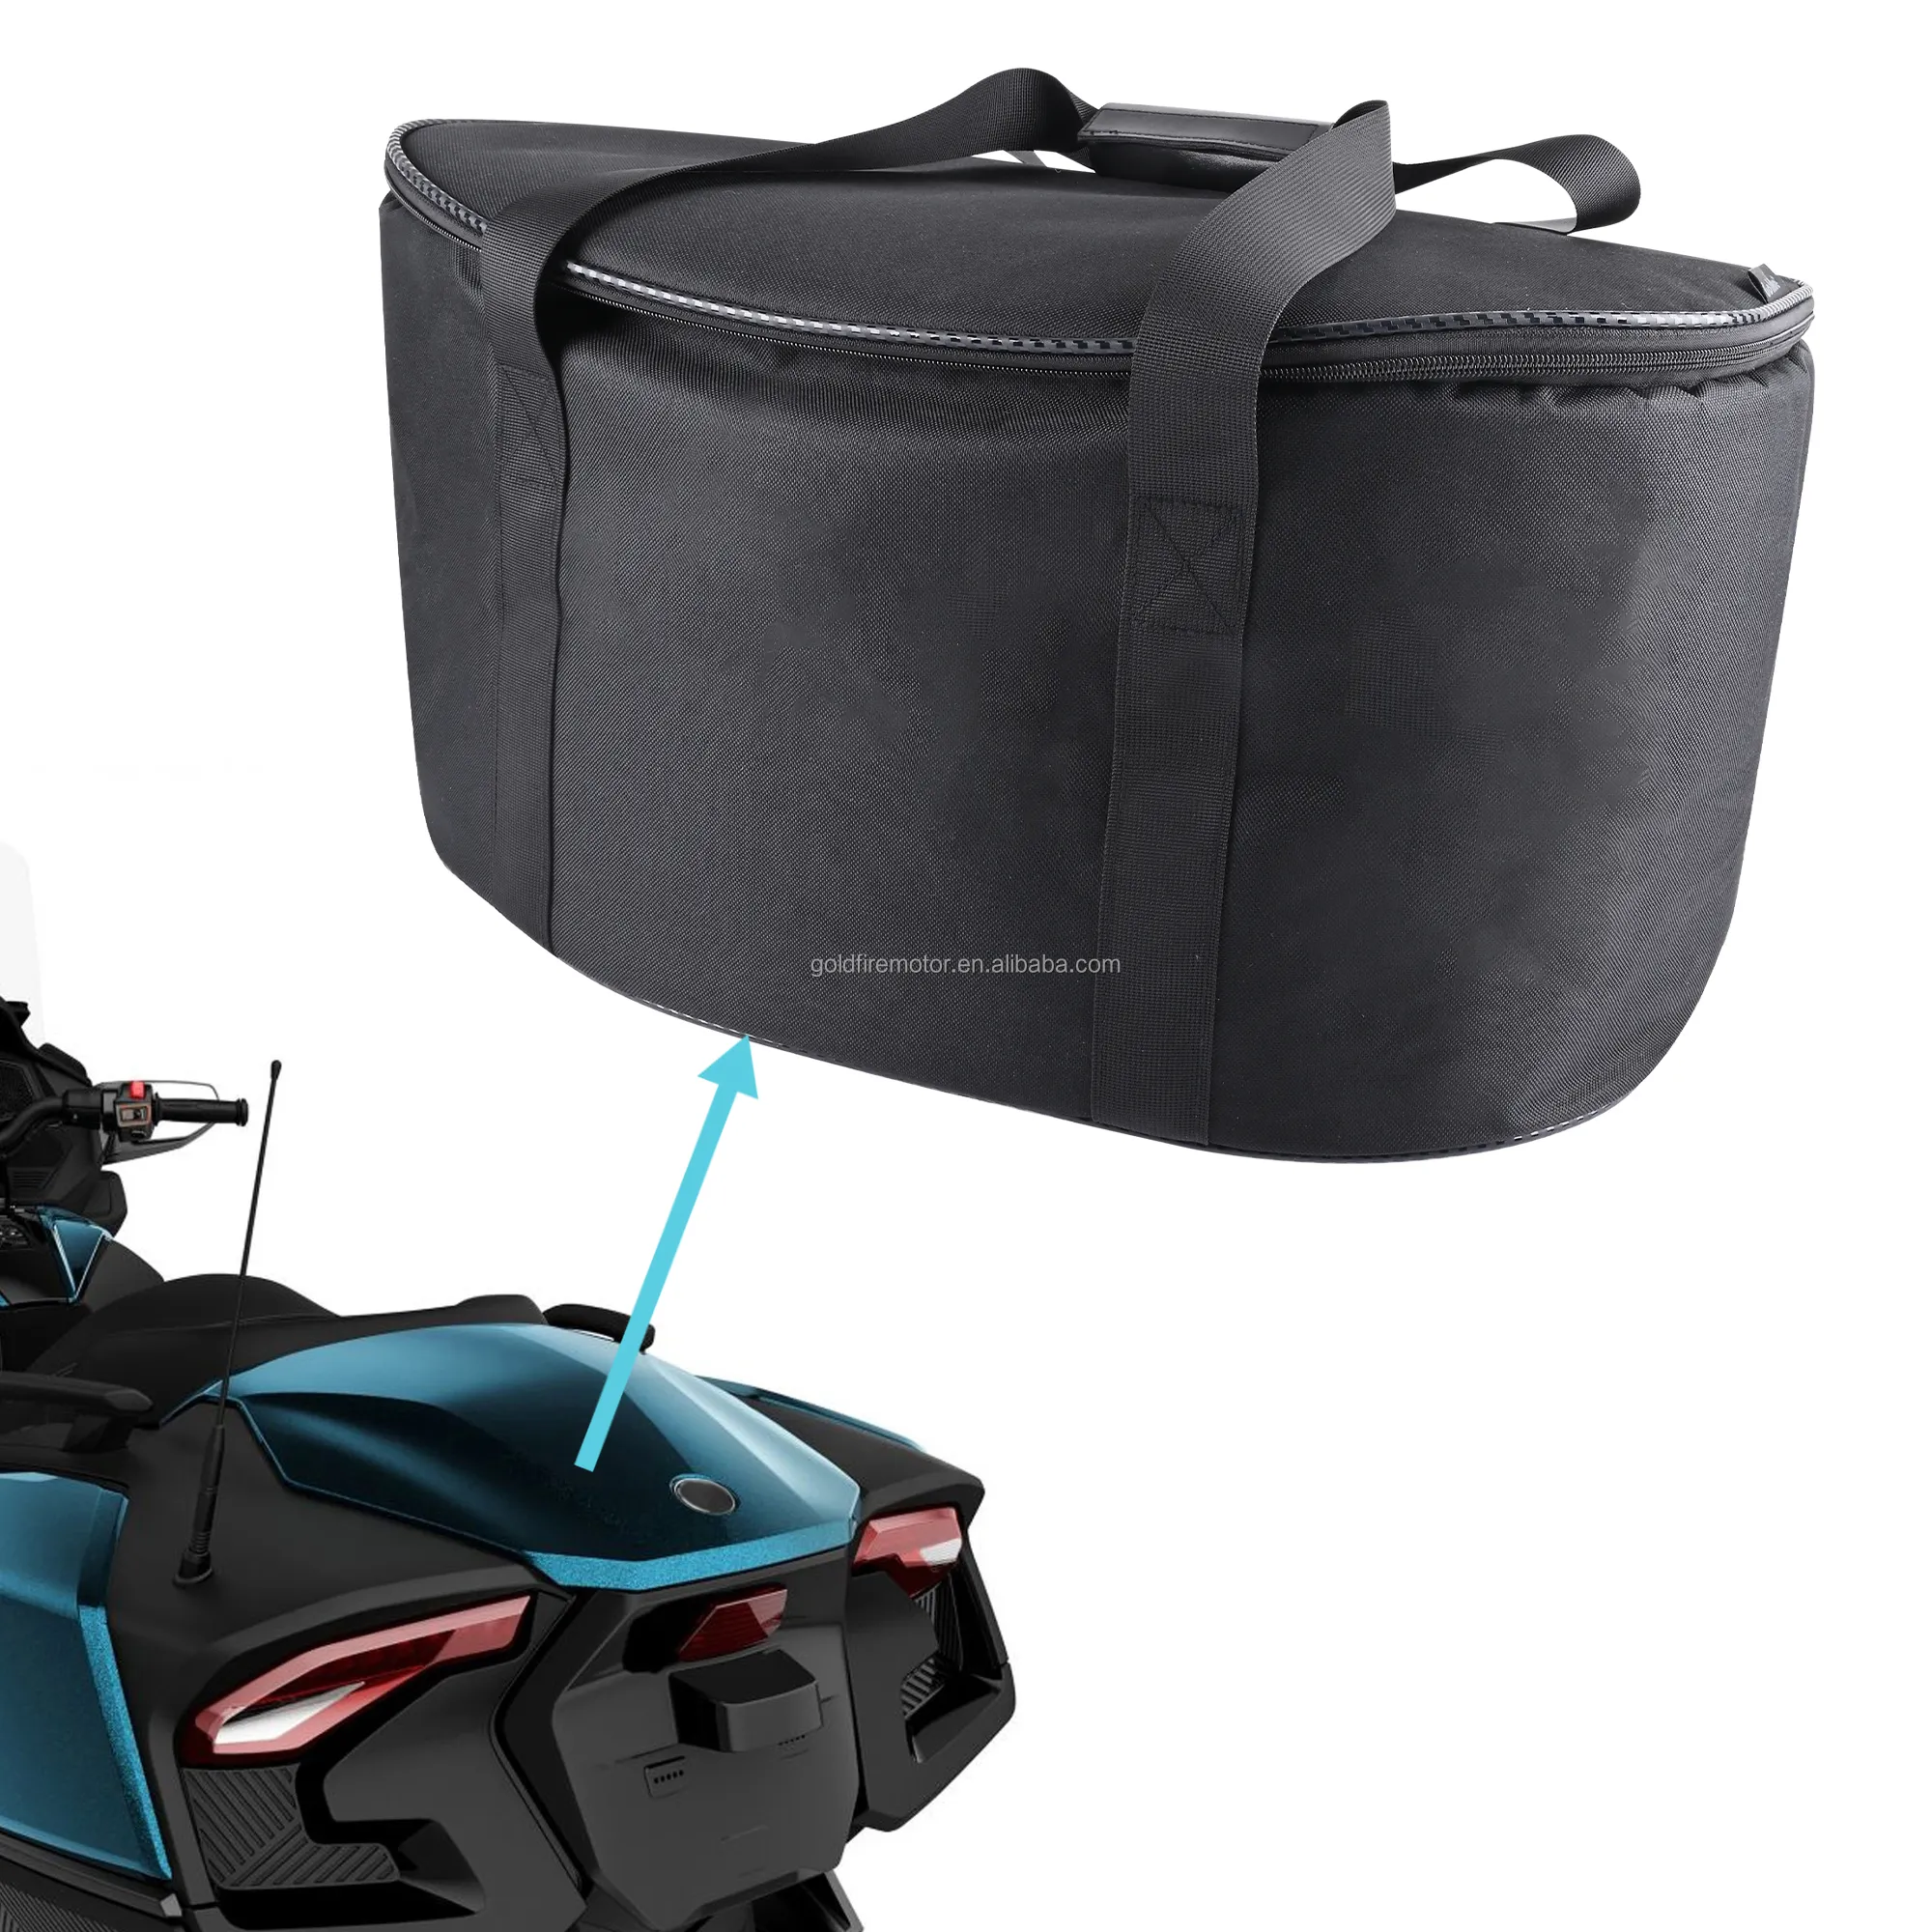 Bolsa de carga de almacenamiento trasera, correas impermeables para mochila, organizador de maletero para Can Am Spyder RT, 2020 +, accesorios para motocicleta